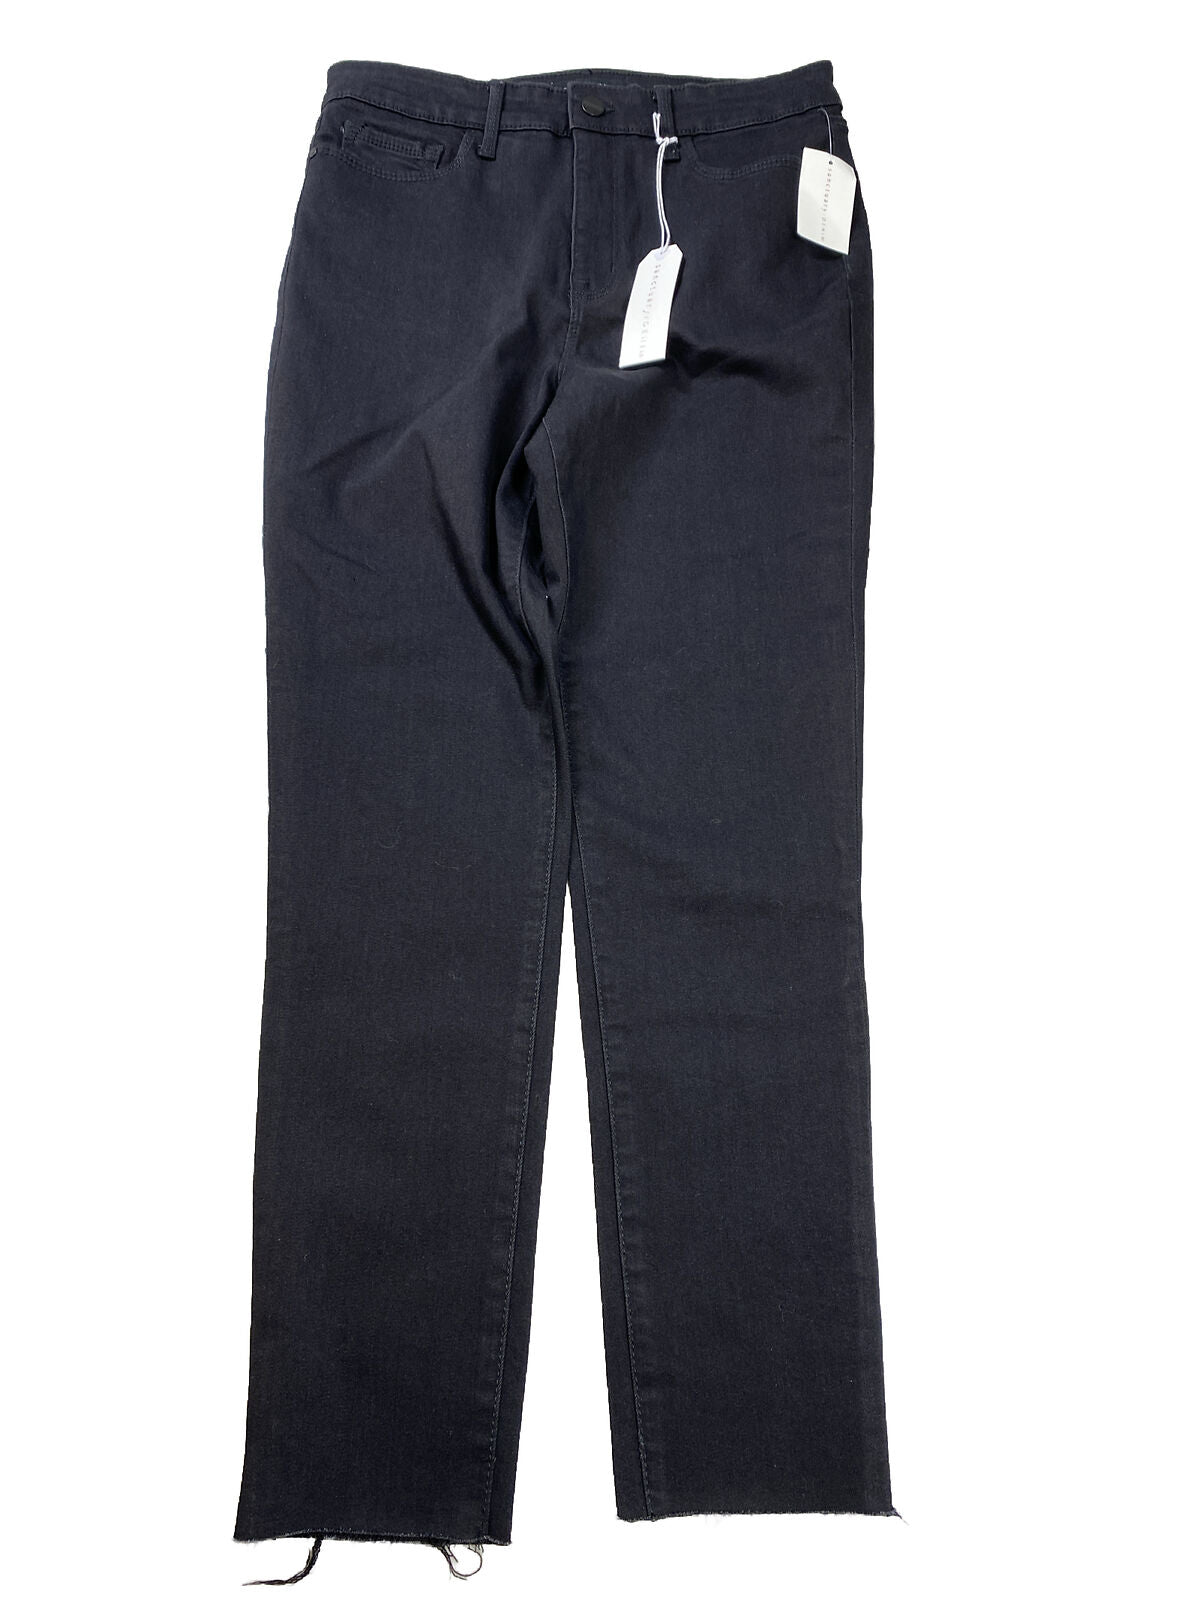 NUEVOS jeans ajustados al tobillo sociales negros de Sanctuary Denim para mujer - 30